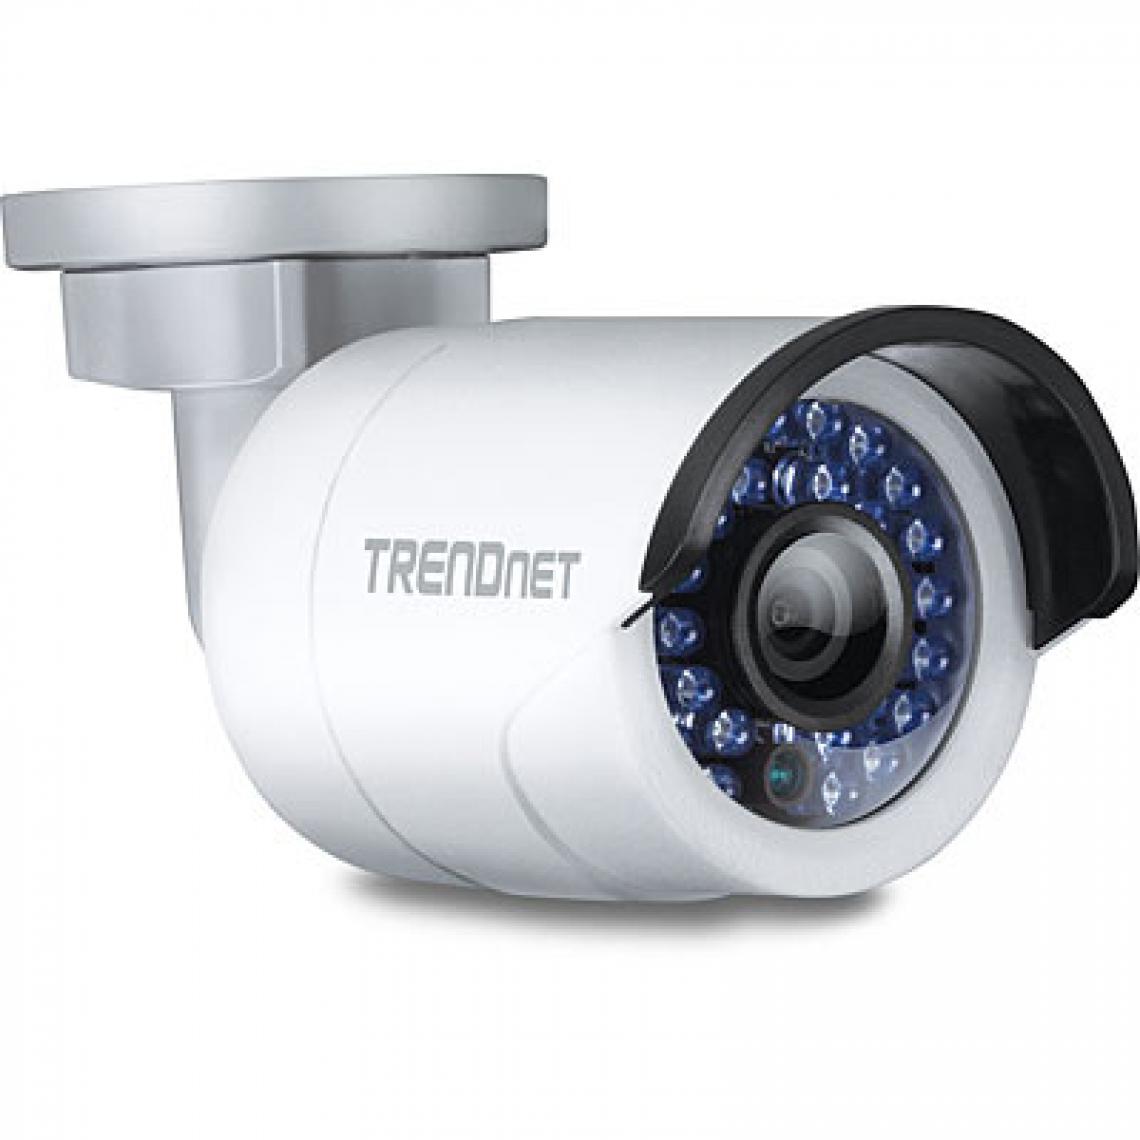 Trendnet - TV-IP310PI - Caméra de surveillance connectée